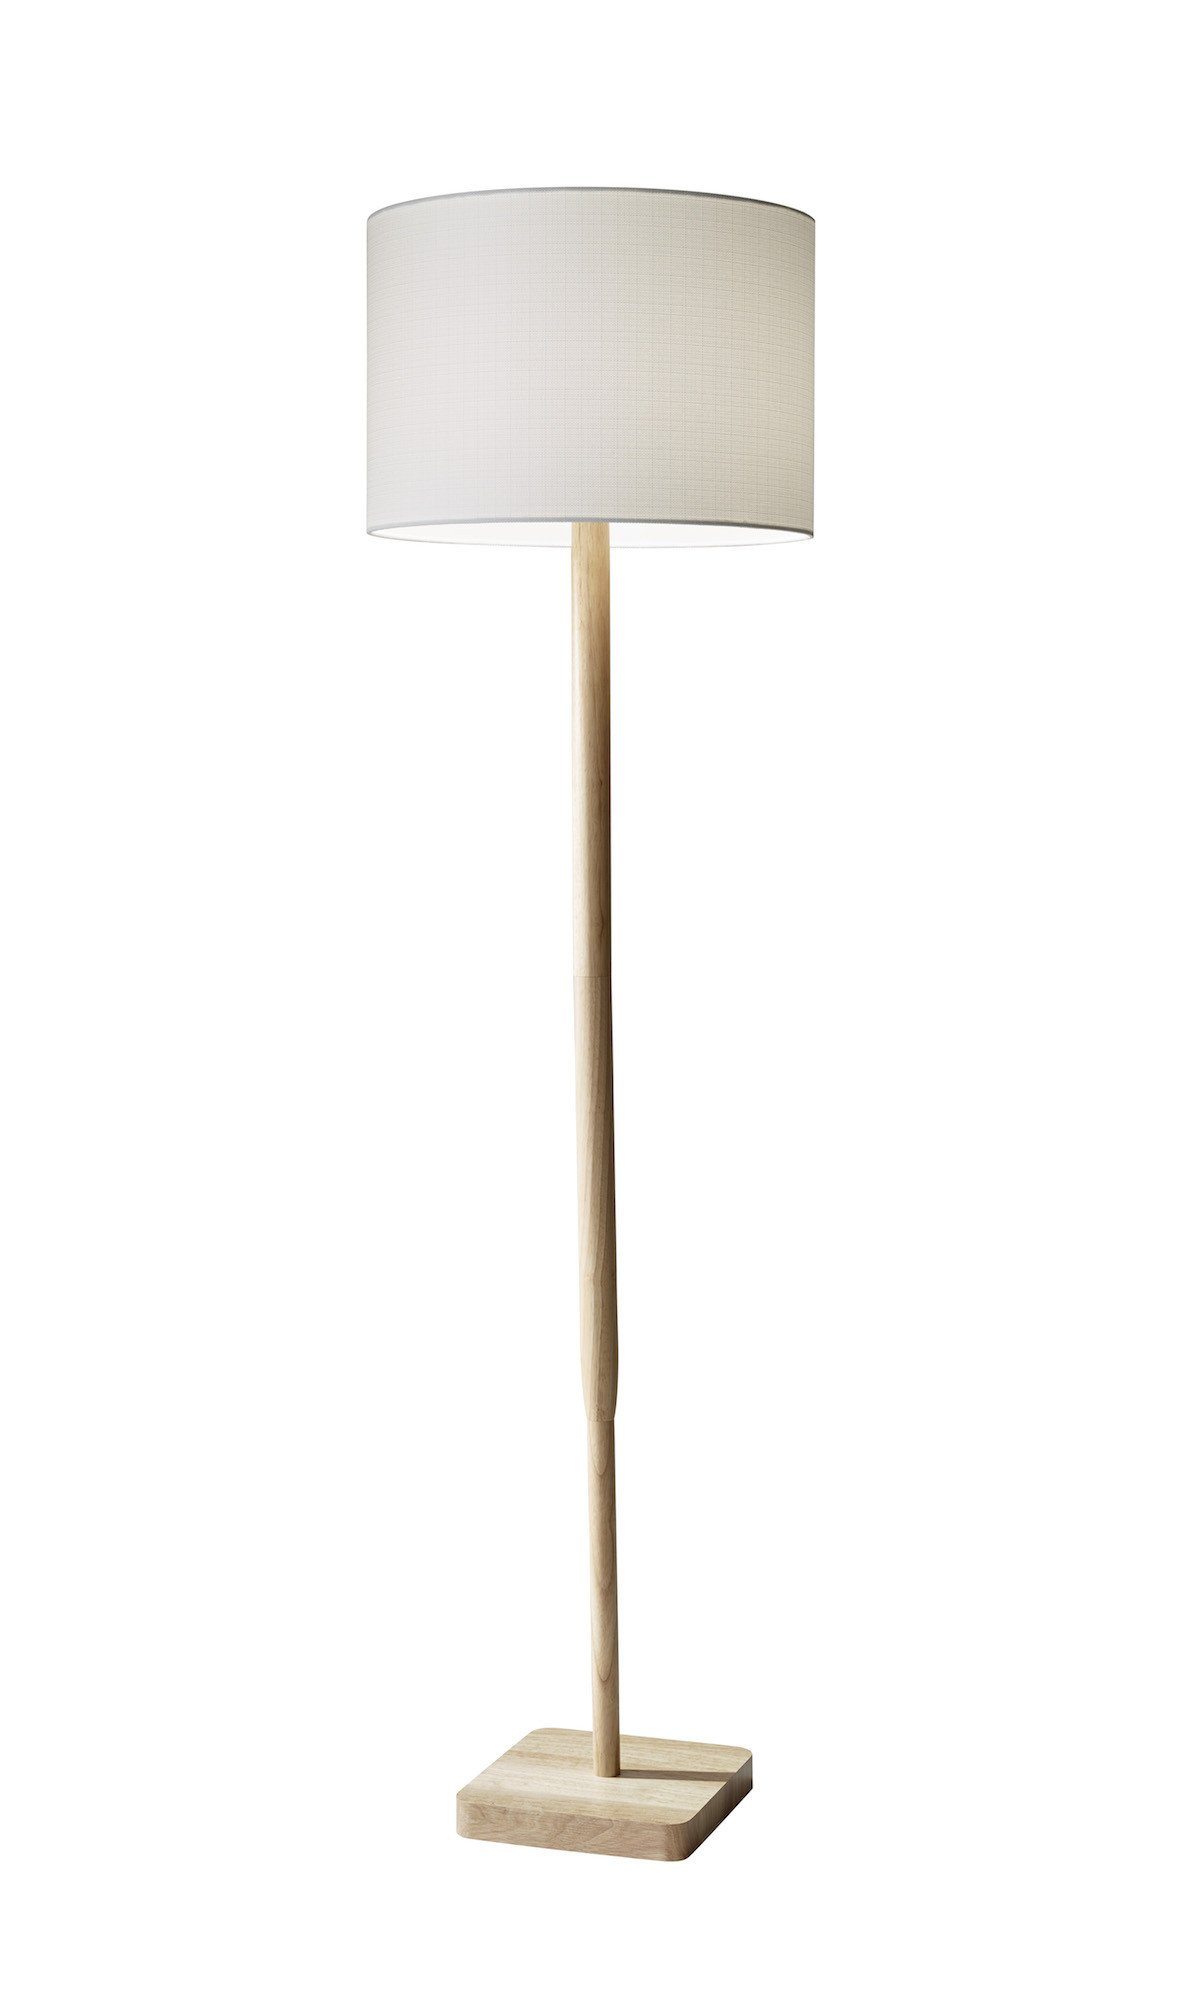 Ellis Floor Lamp - Natural Rubber Wood Lamps Adesso Natural 